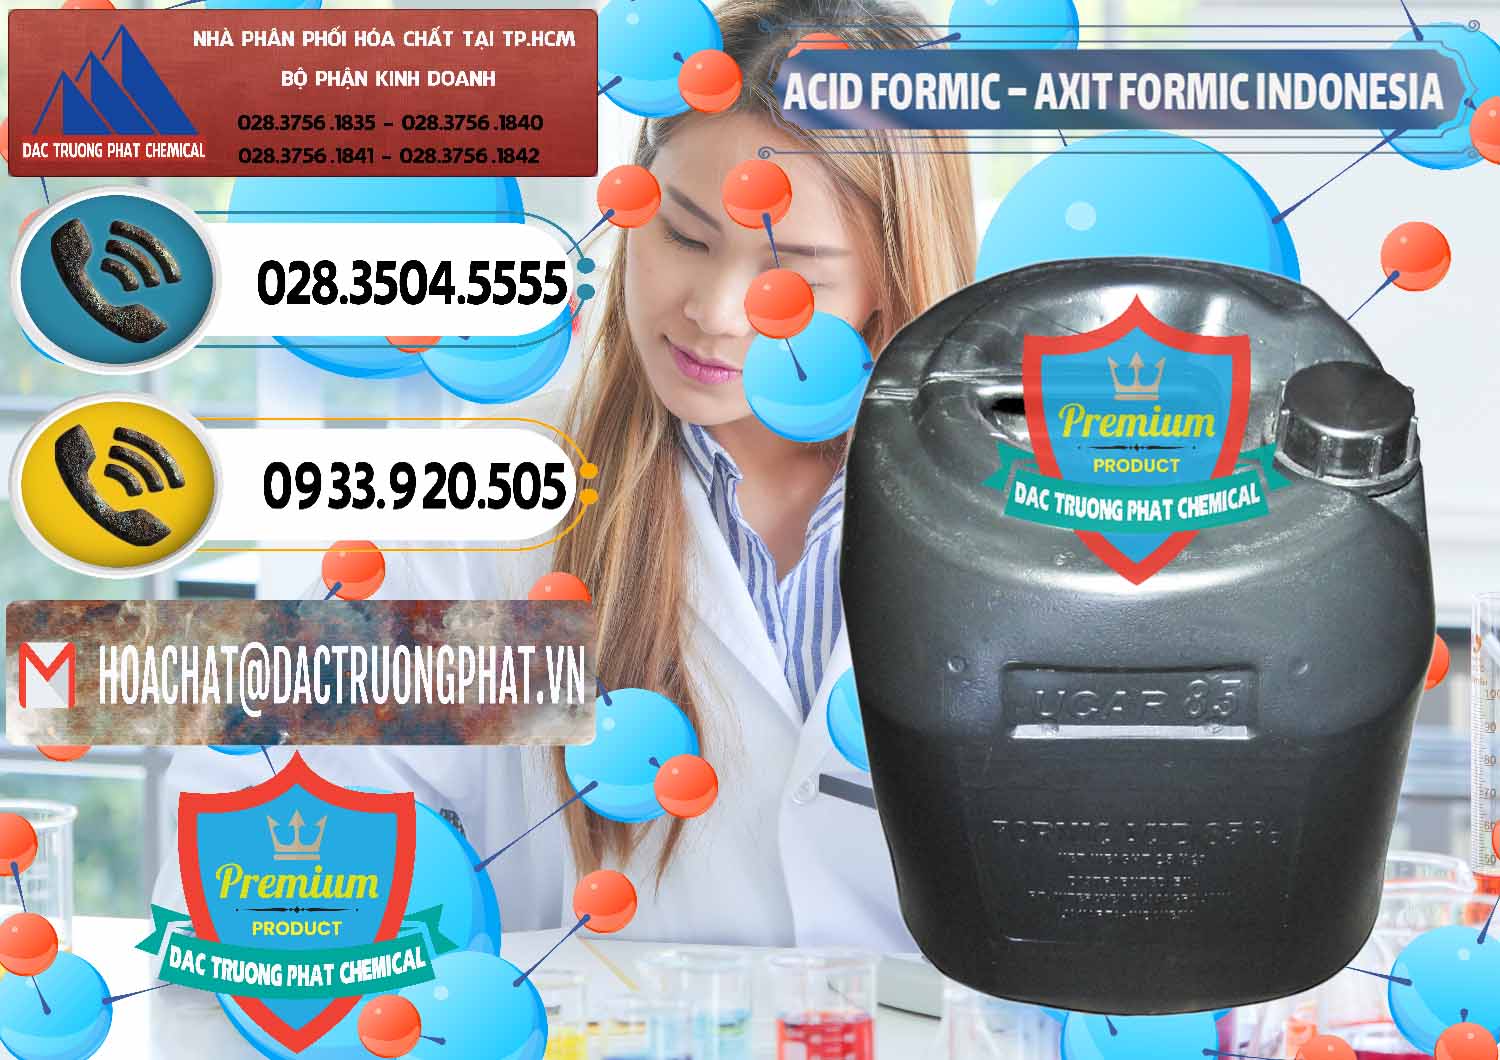 Công ty chuyên nhập khẩu và bán Acid Formic - Axit Formic Indonesia - 0026 - Đơn vị cung cấp - phân phối hóa chất tại TP.HCM - hoachatdetnhuom.vn